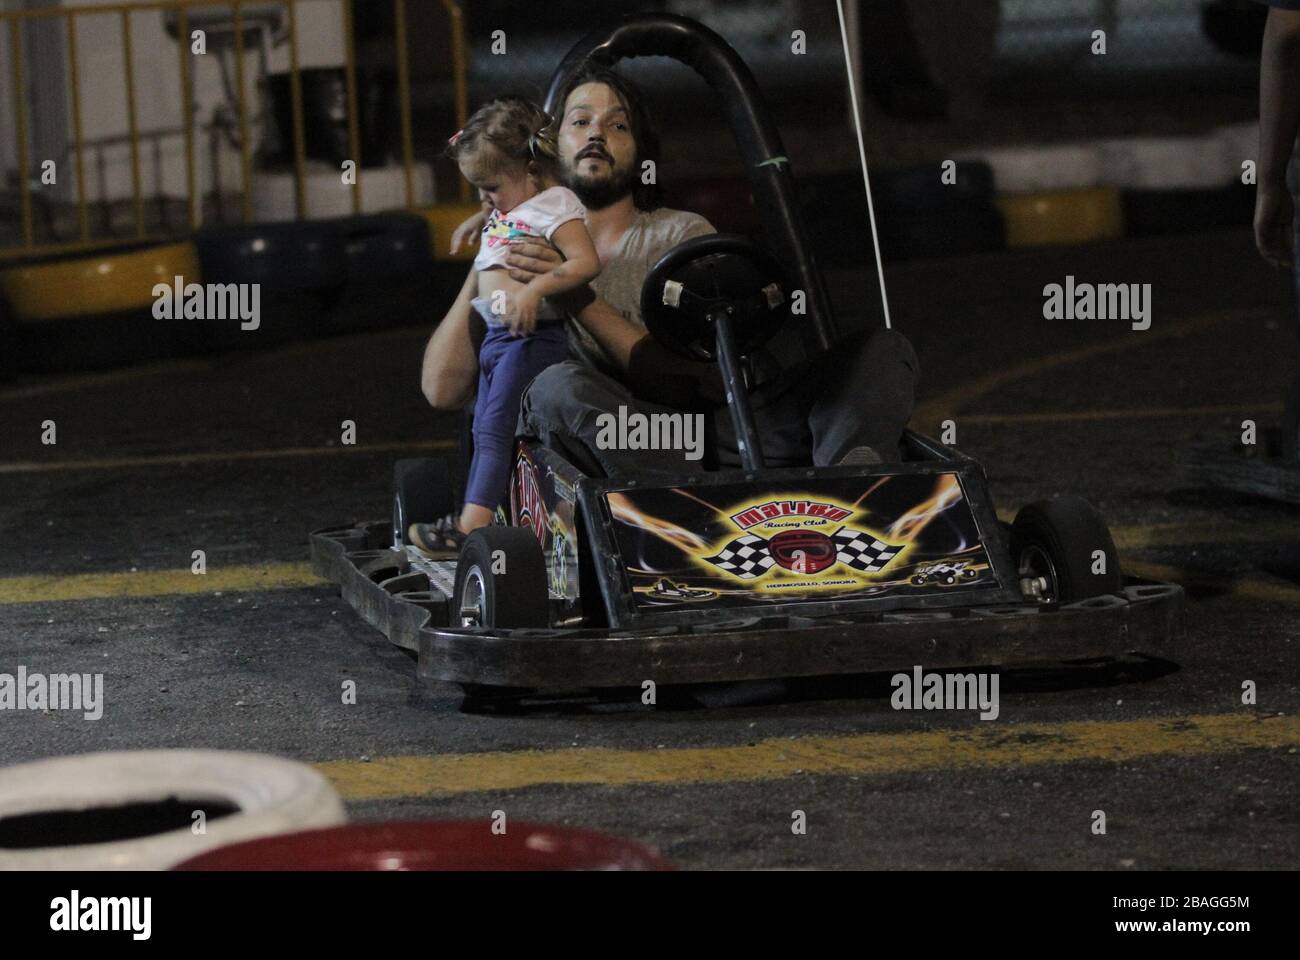 El Actor Diego Luna y Camila Sodi pasaron una tarde con sus dos hijos  Jerónimo y Fiona durante un domingo de descanso luego de semanas de calor en So Stock Photo